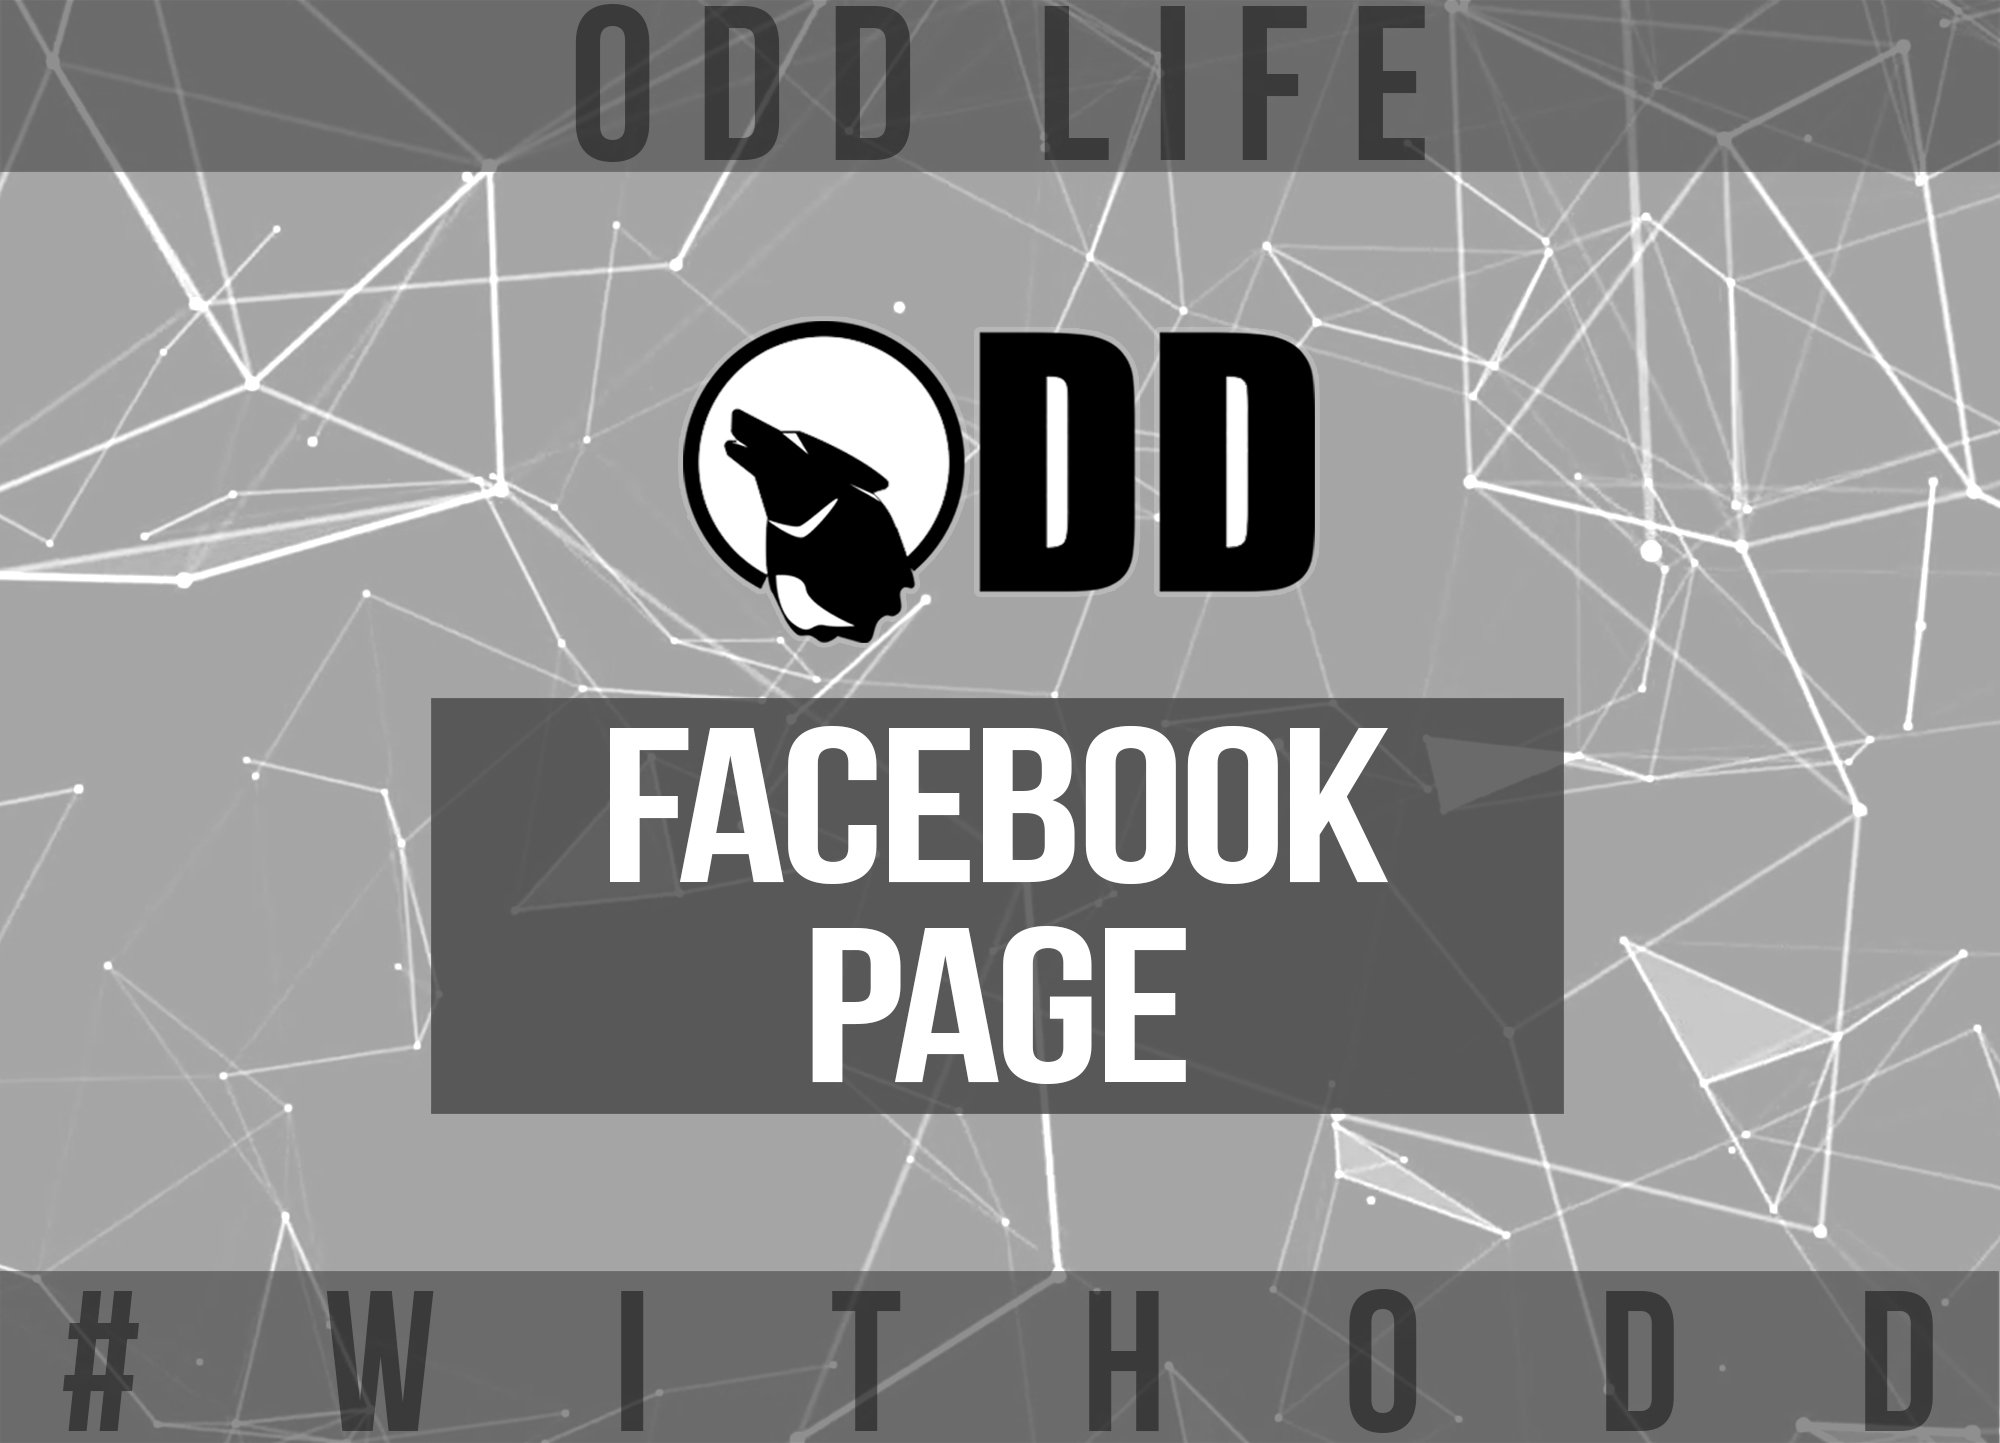 Team ODD: Preguntas y Respuestas